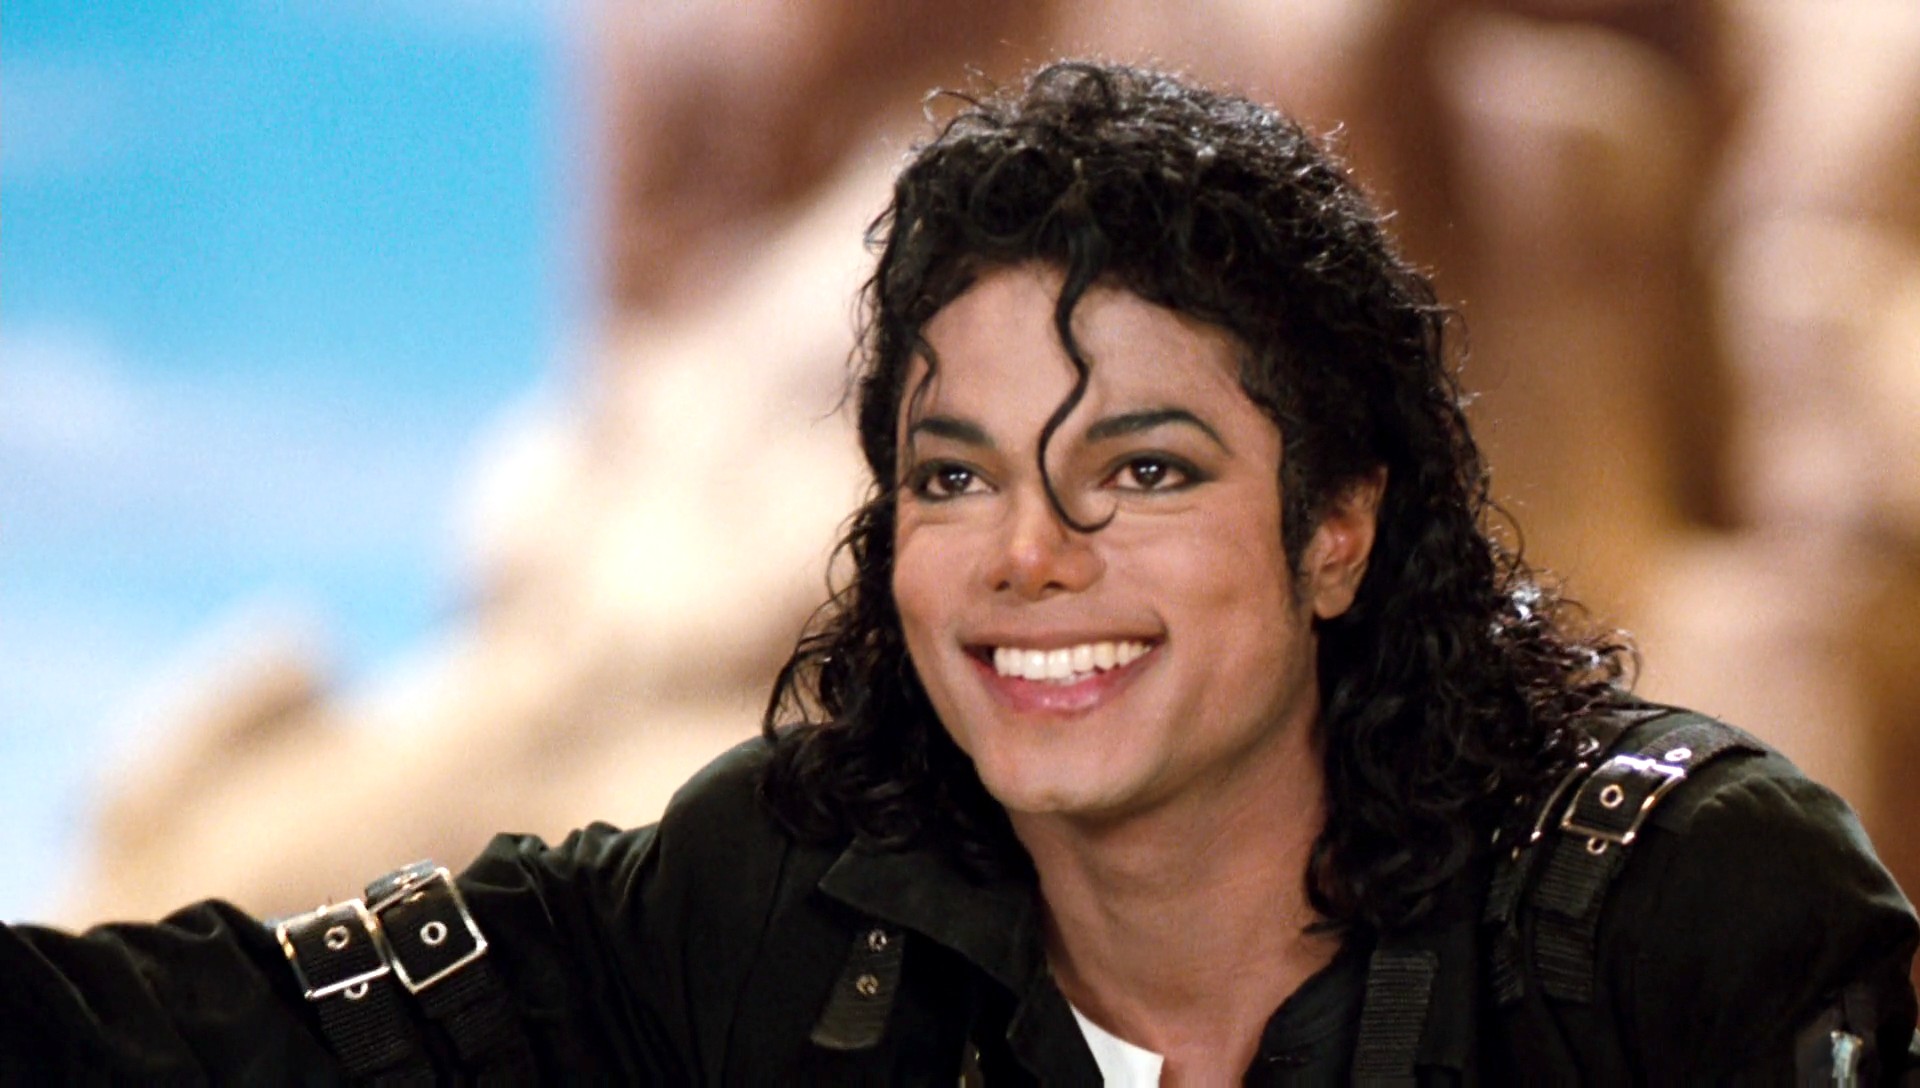 Michael Jackson de nouveau accusé de pédophilie : le documentaire choc !